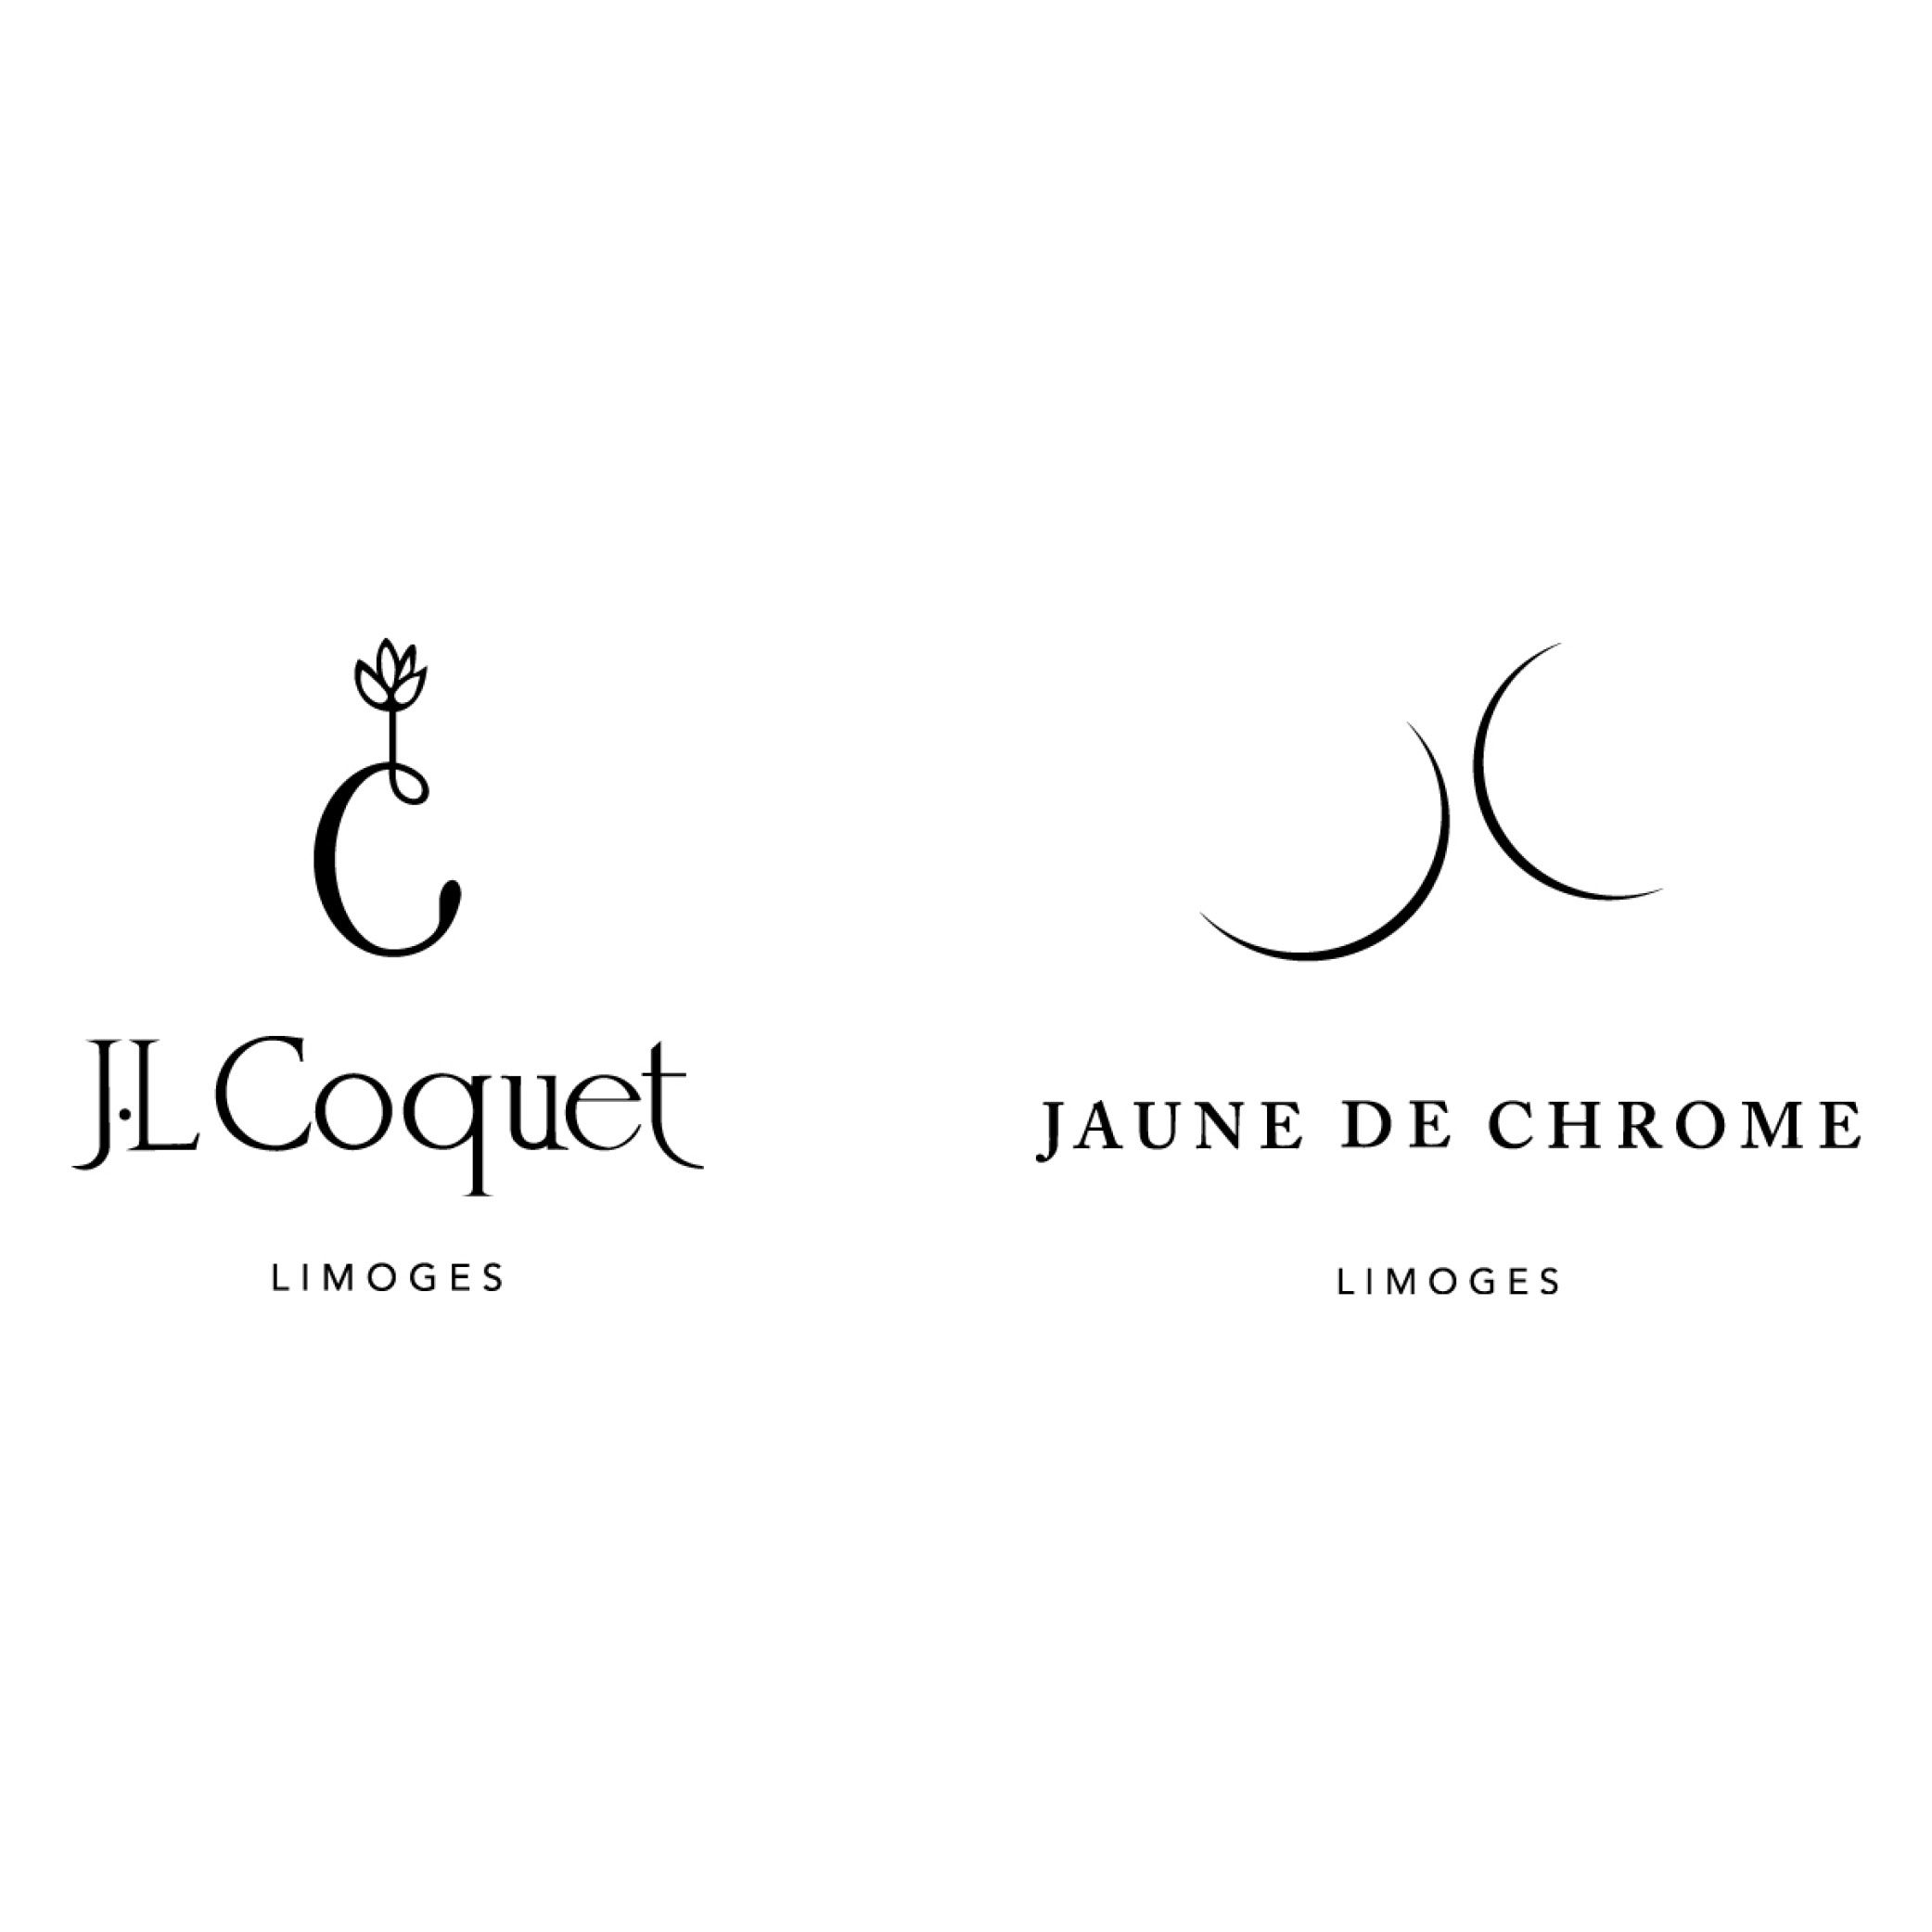 J.L COQUET & JAUNE DE CHROME